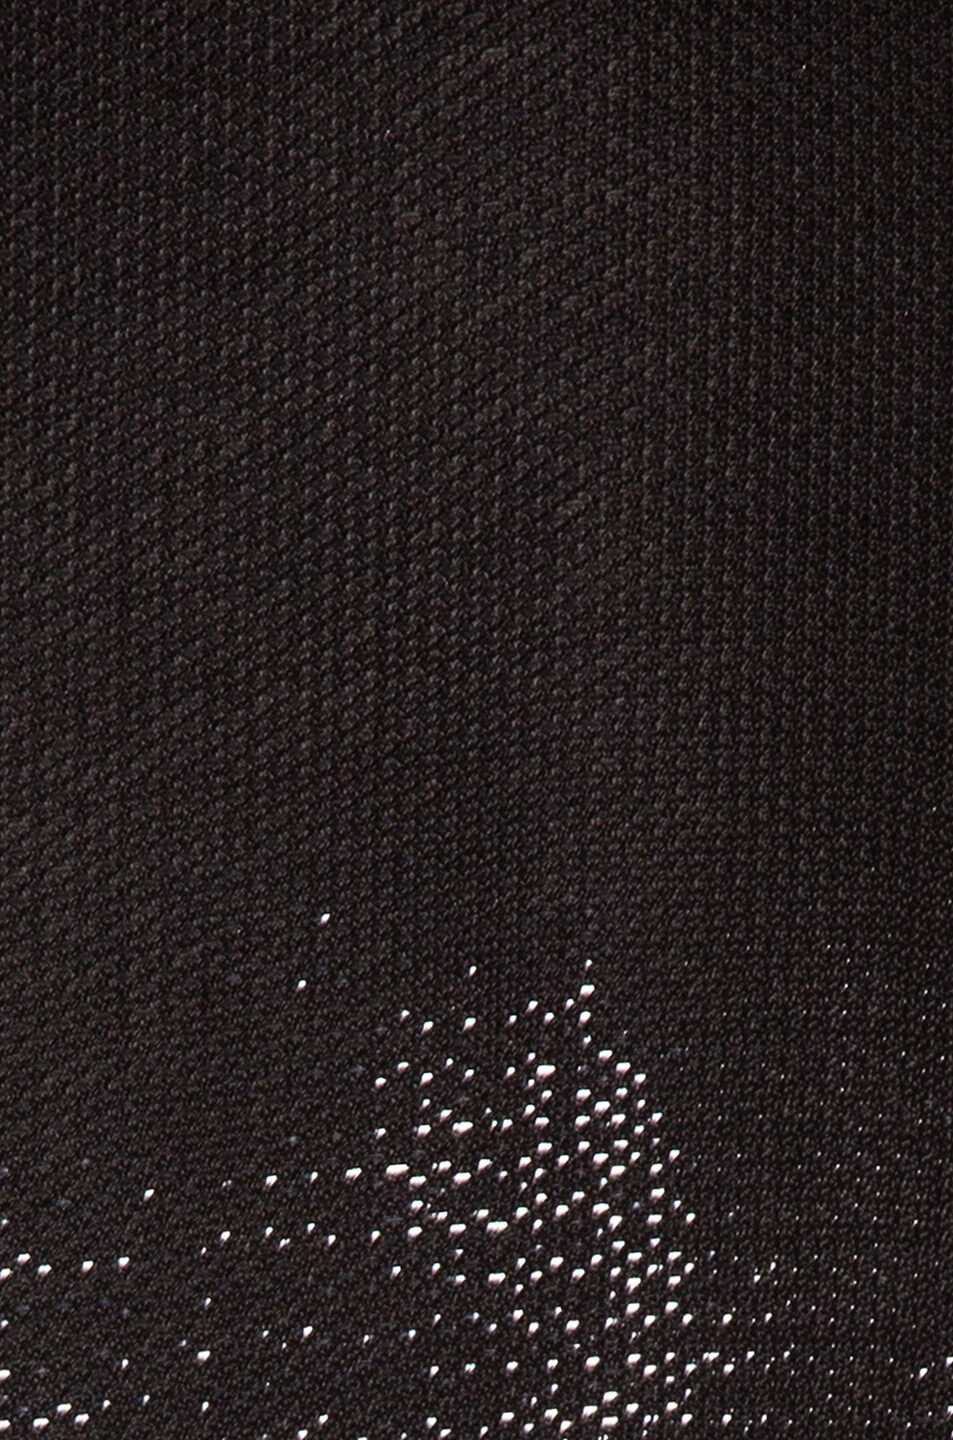 JONATHAN SIMKHAI Lace Knit Wrap Dress in Black | FWRD